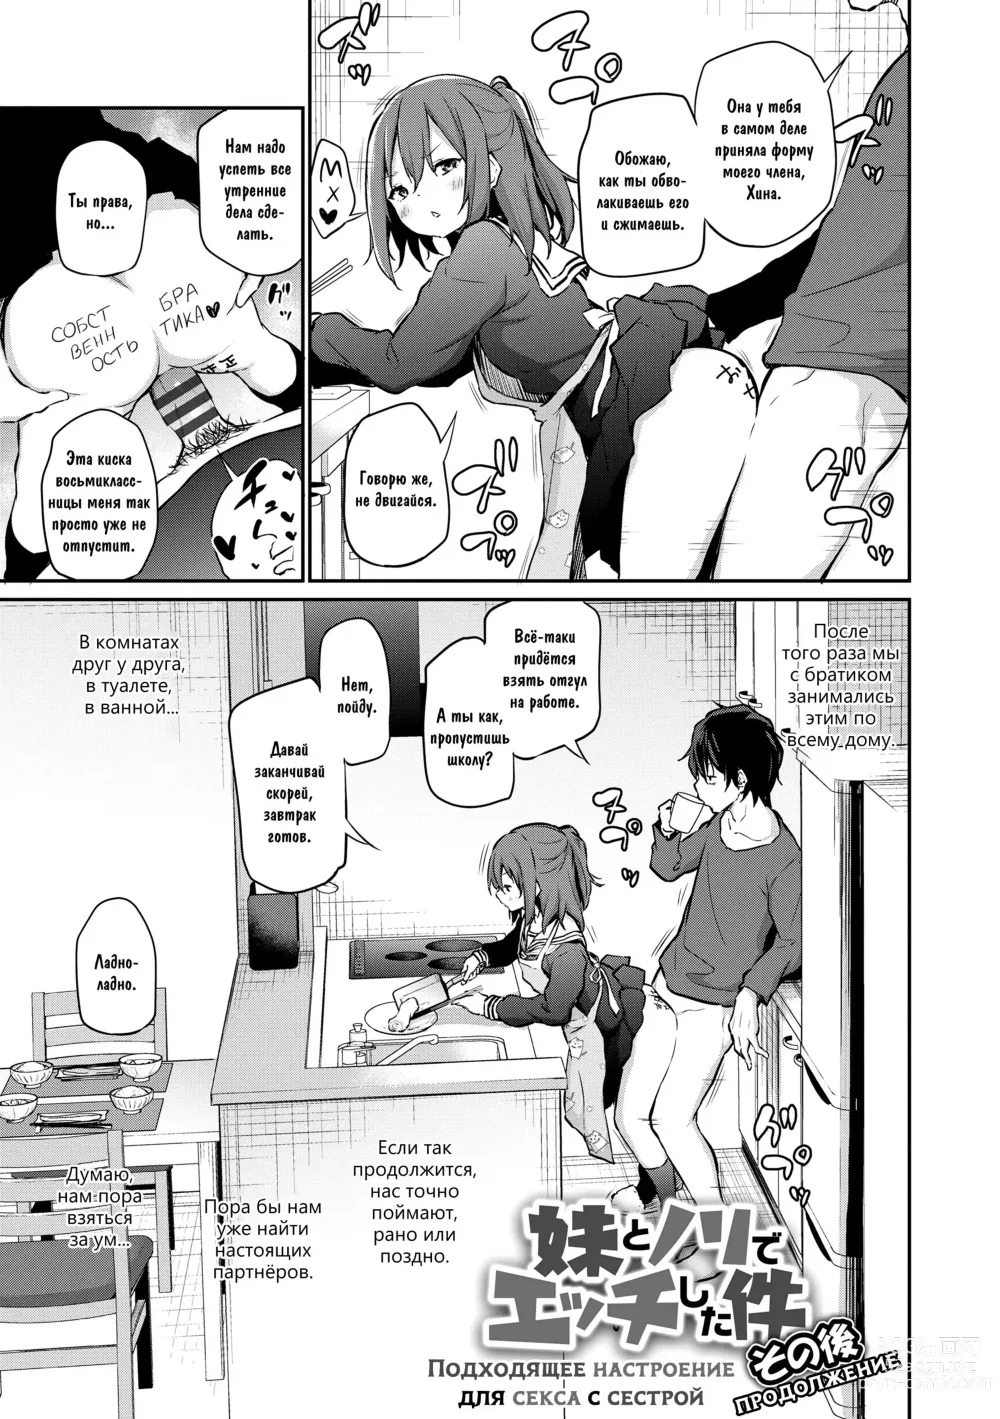 Page 3 of manga Подходящее настроение для секса с сестрой: продолжение